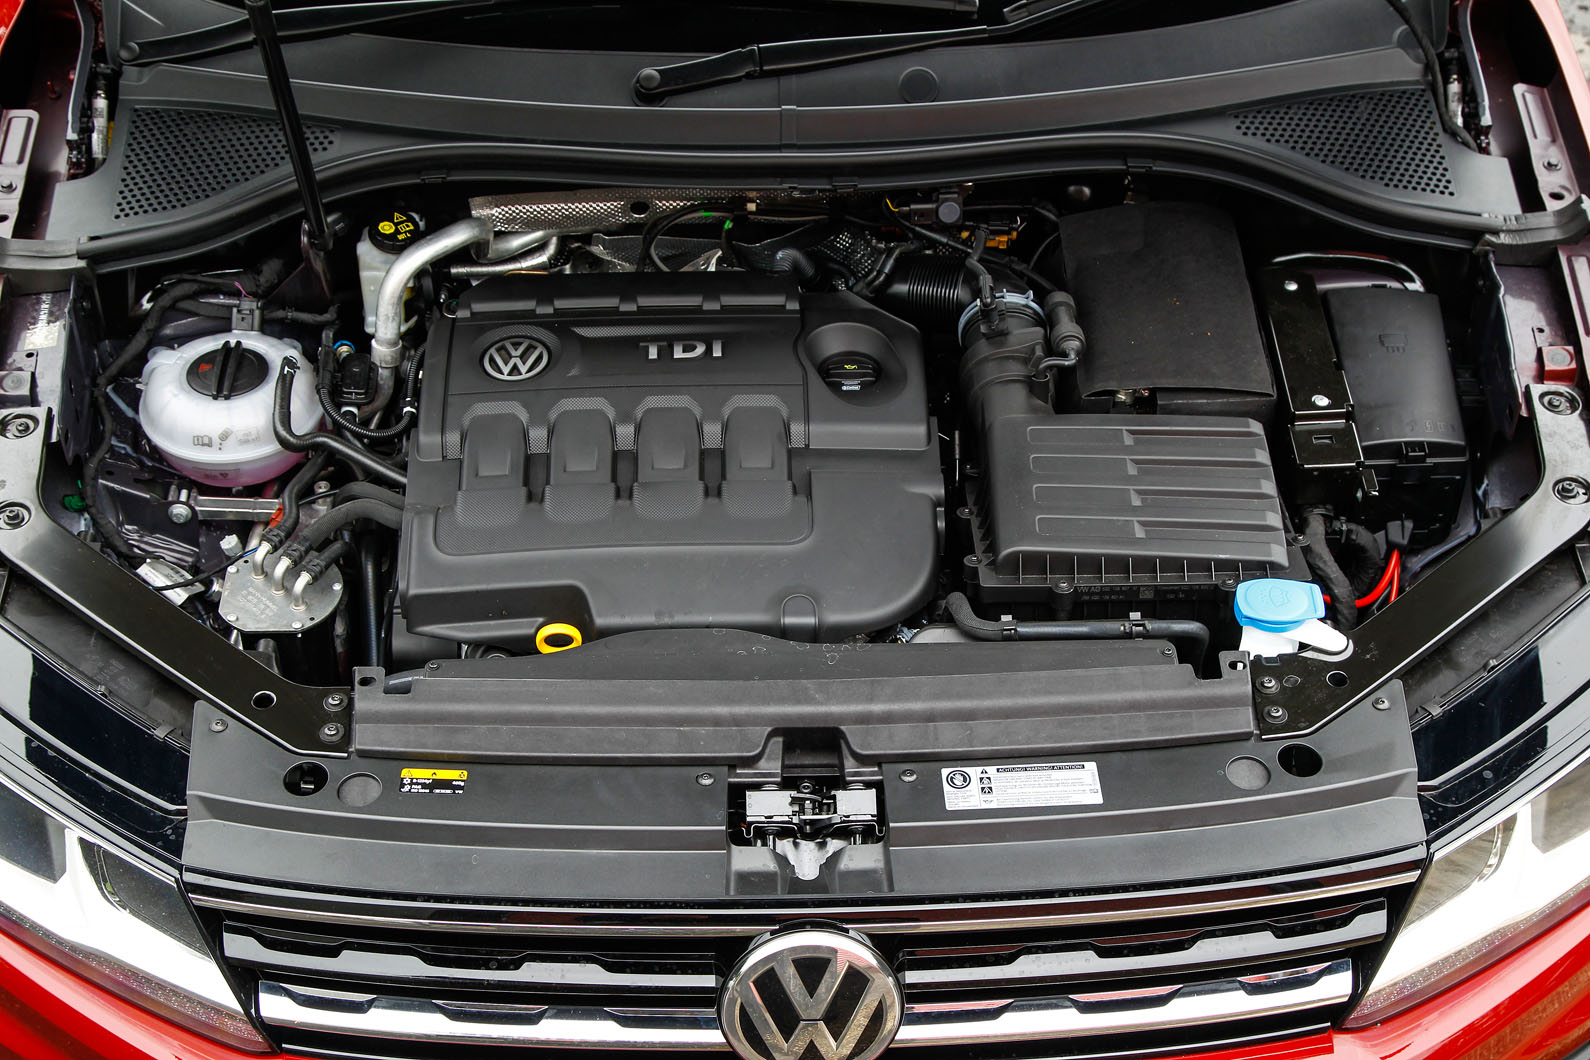 2.0-litre Volkswagen Tiguan diesel engine